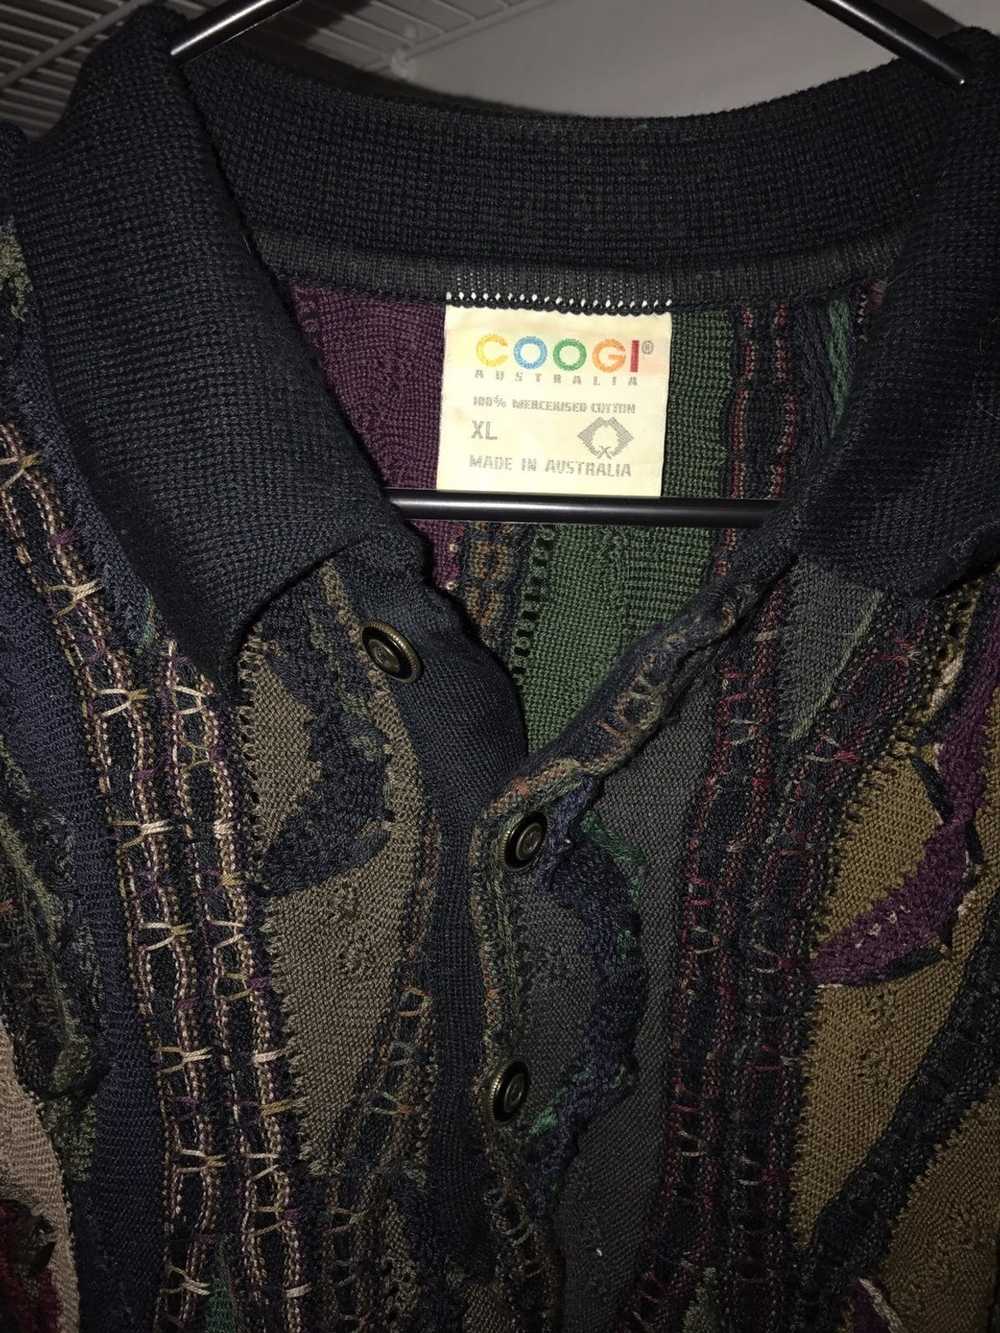 Coogi OG Coogi Sweater - image 3